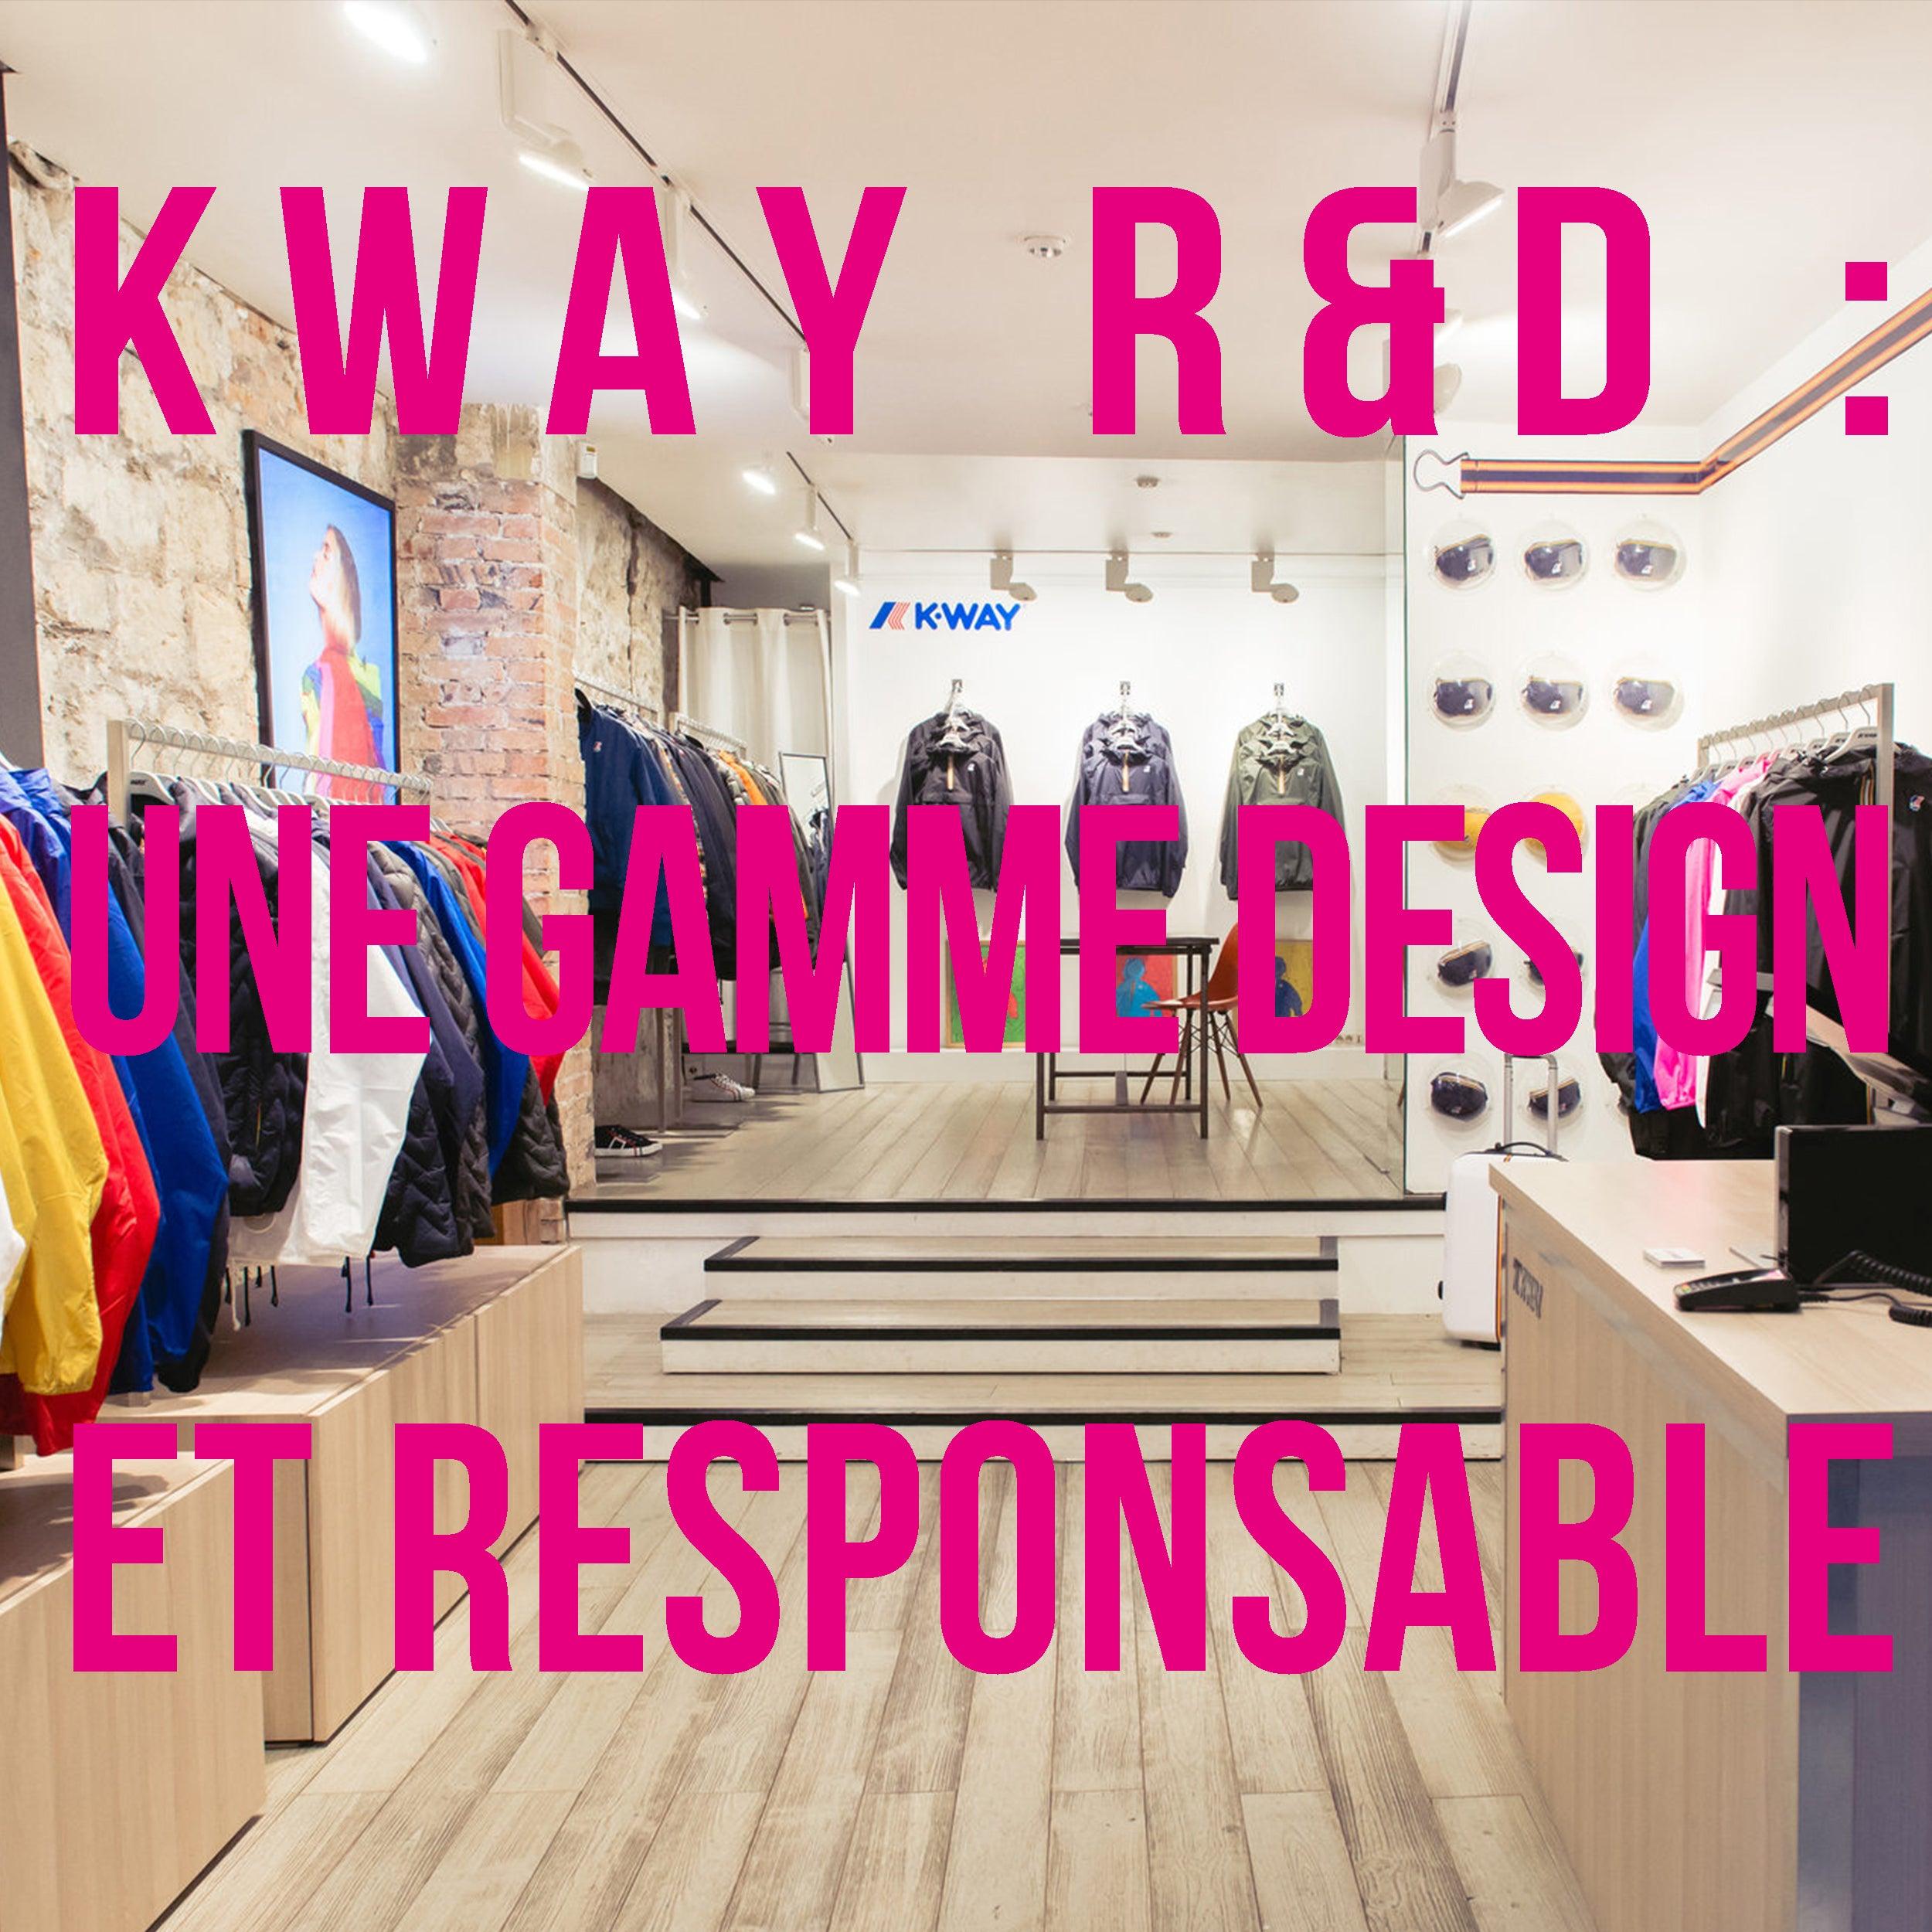 Kway R&D, une gamme design et éco responsable - Lesthete